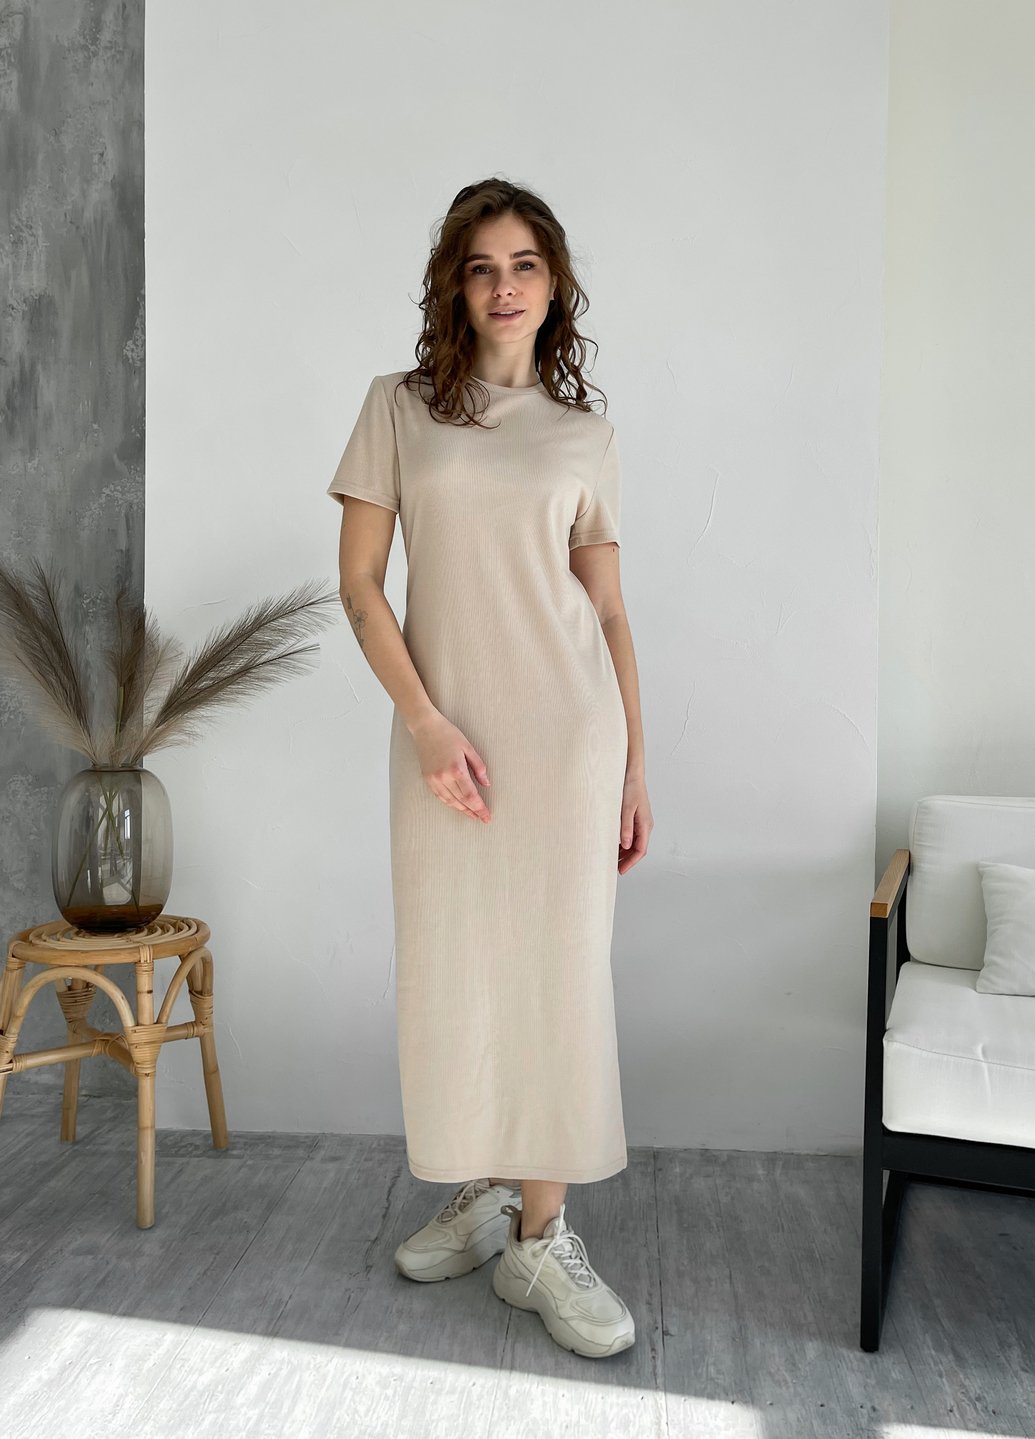 Купить Длинное платье женское в рубчик светло-бежевое Merlini Кассо 700000122, размер XS-M (40-44) в интернет-магазине